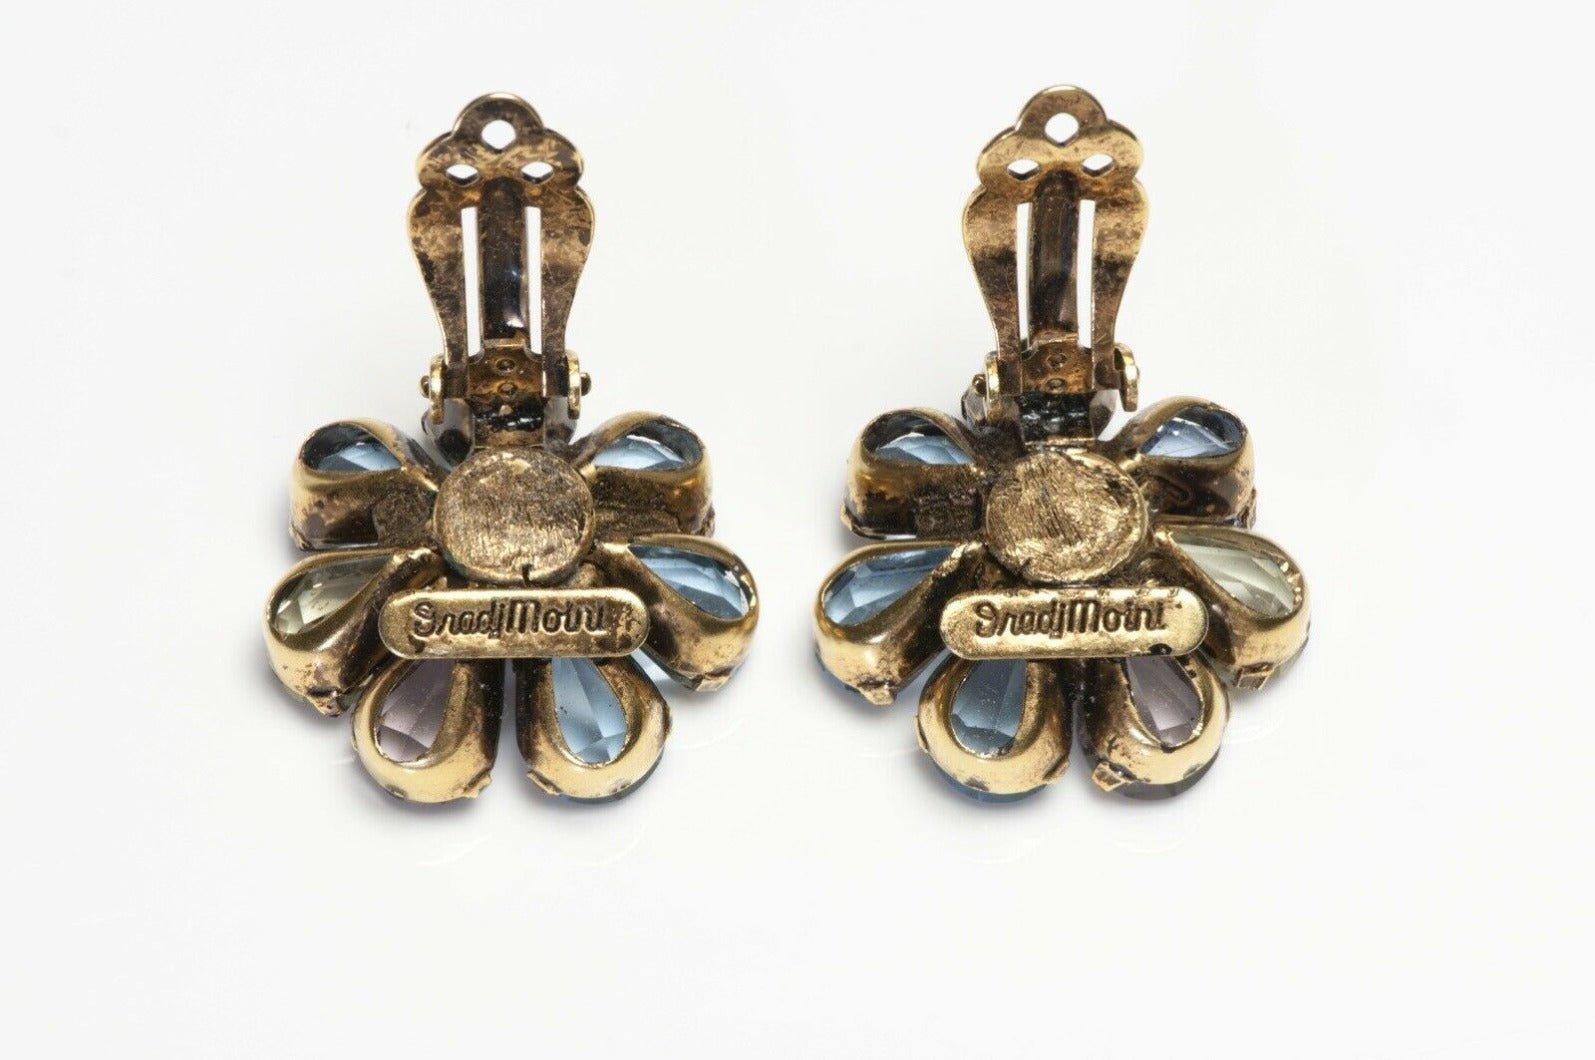 Iradj Moini Semiprecious Stones Flower Bouquet Brooch Earrings Set